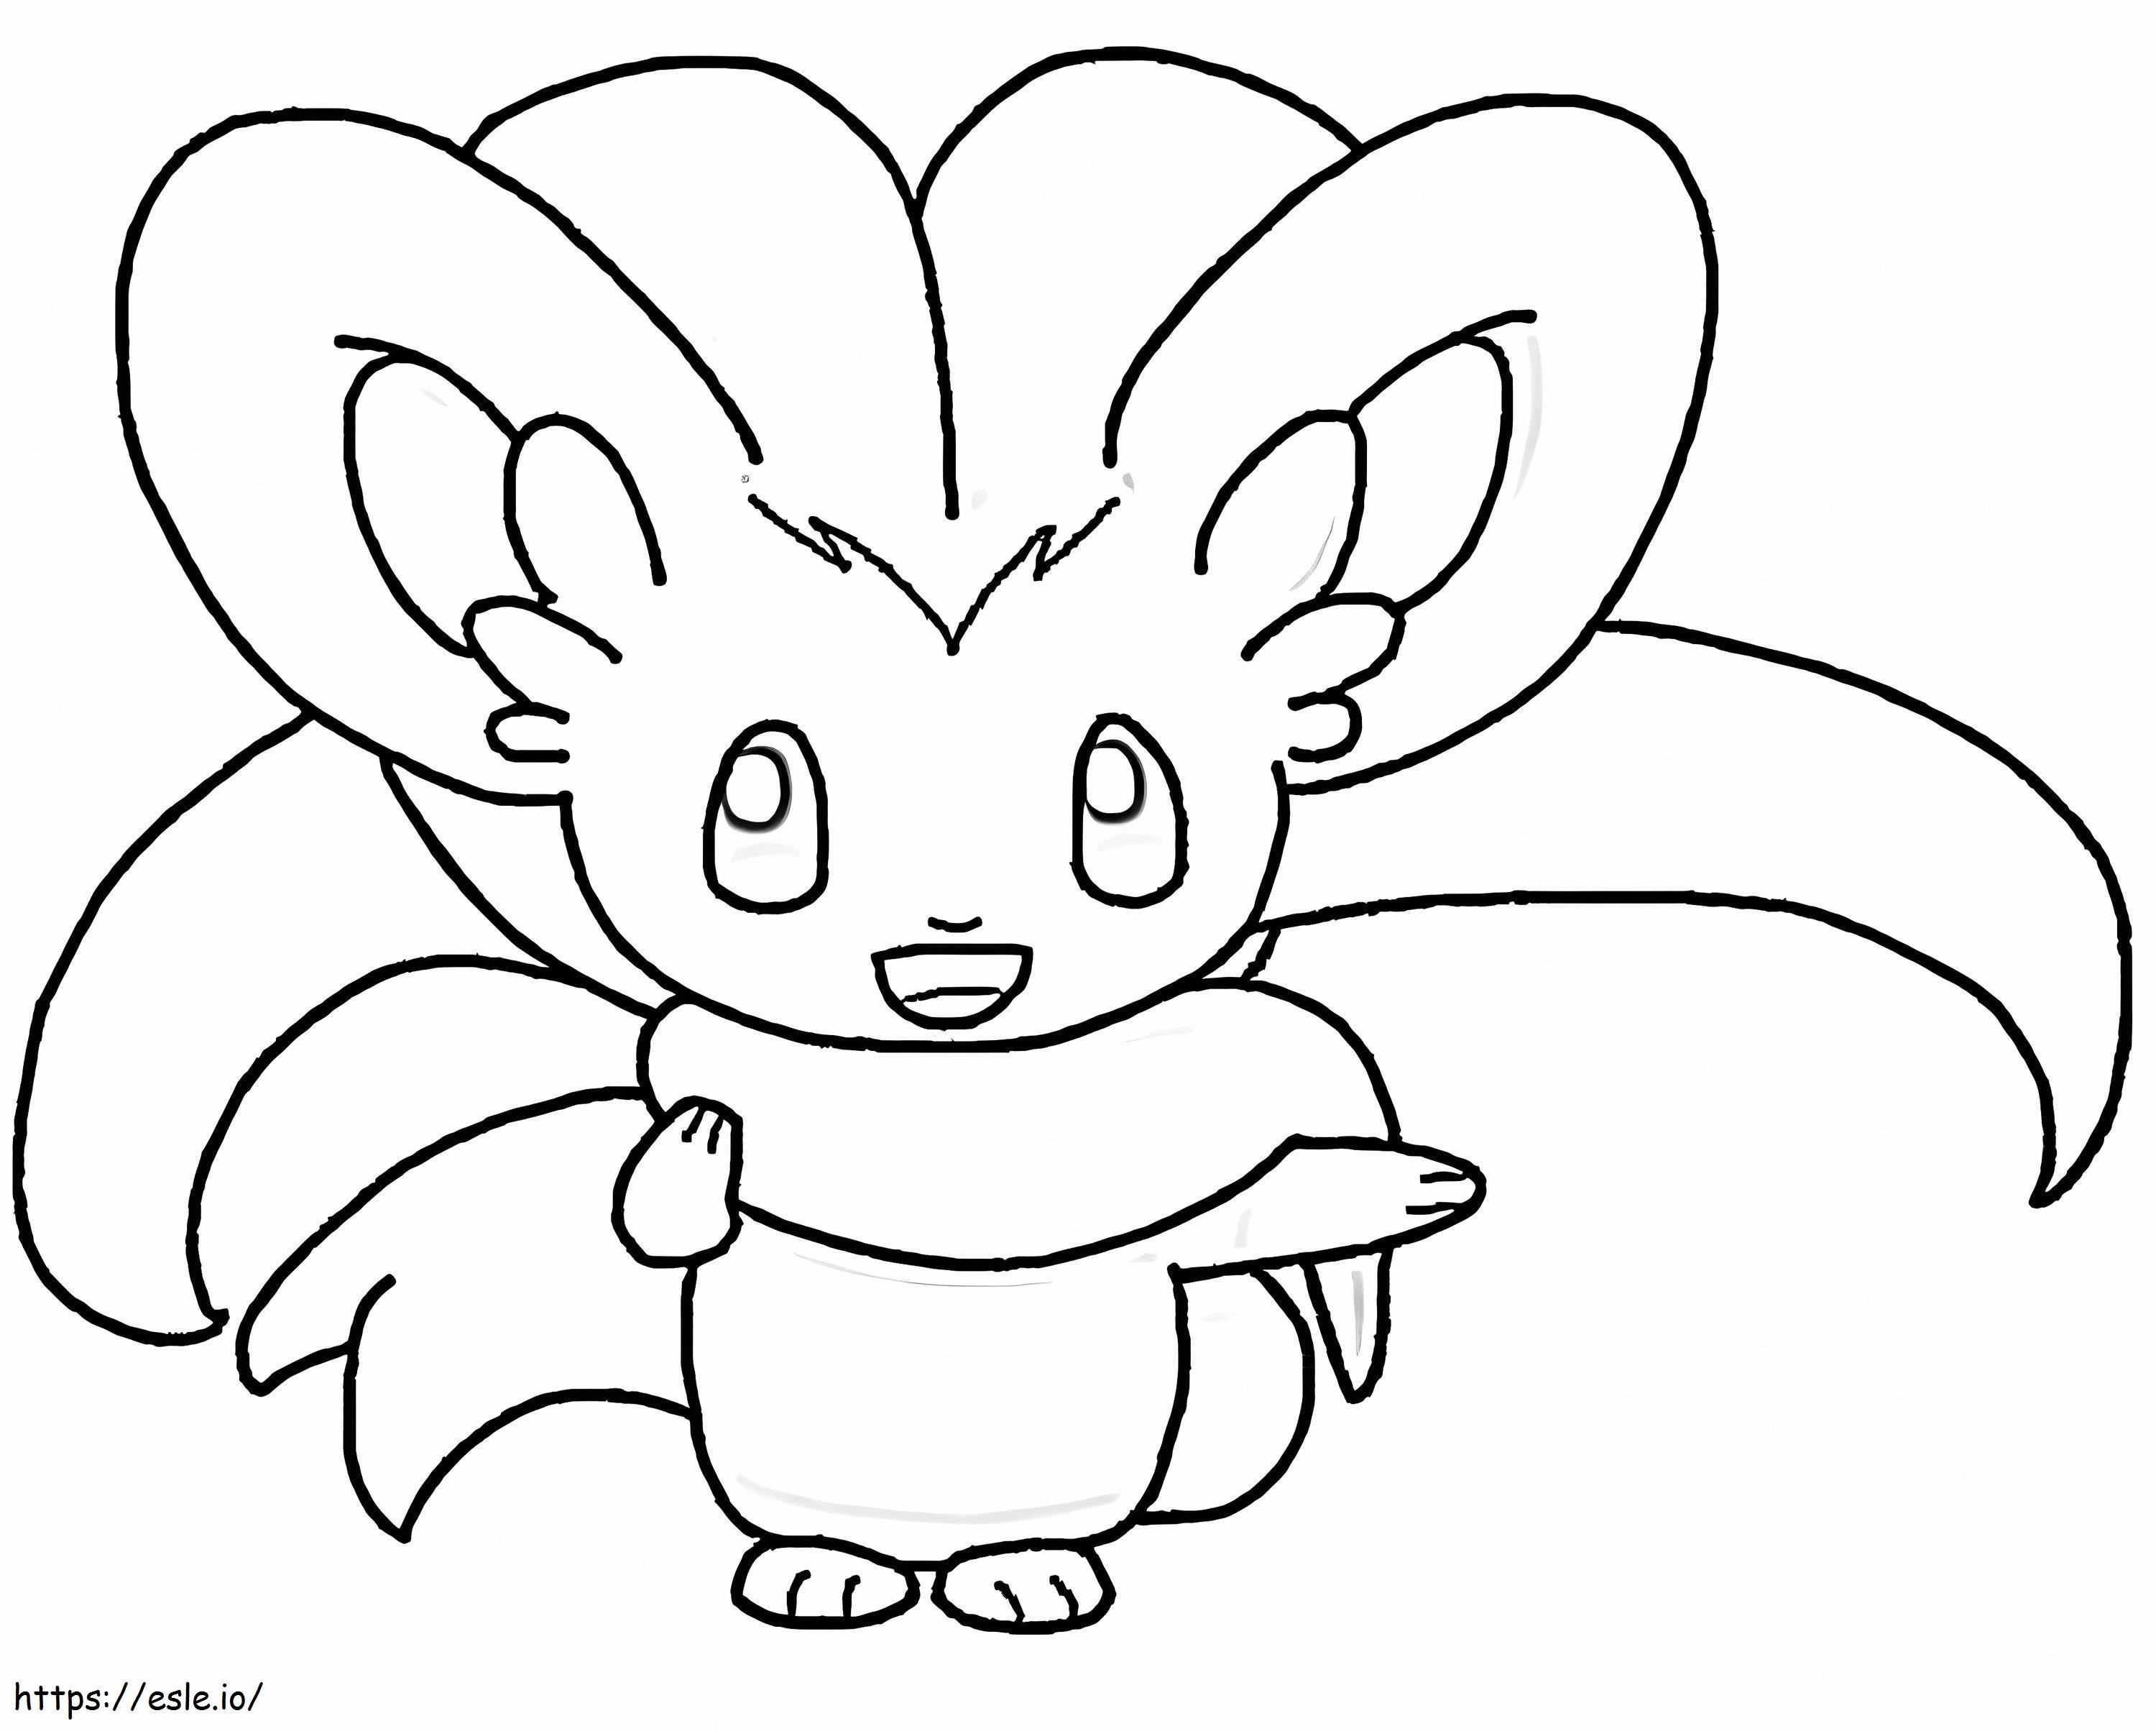 Cute Cinccino Pokemon coloring page